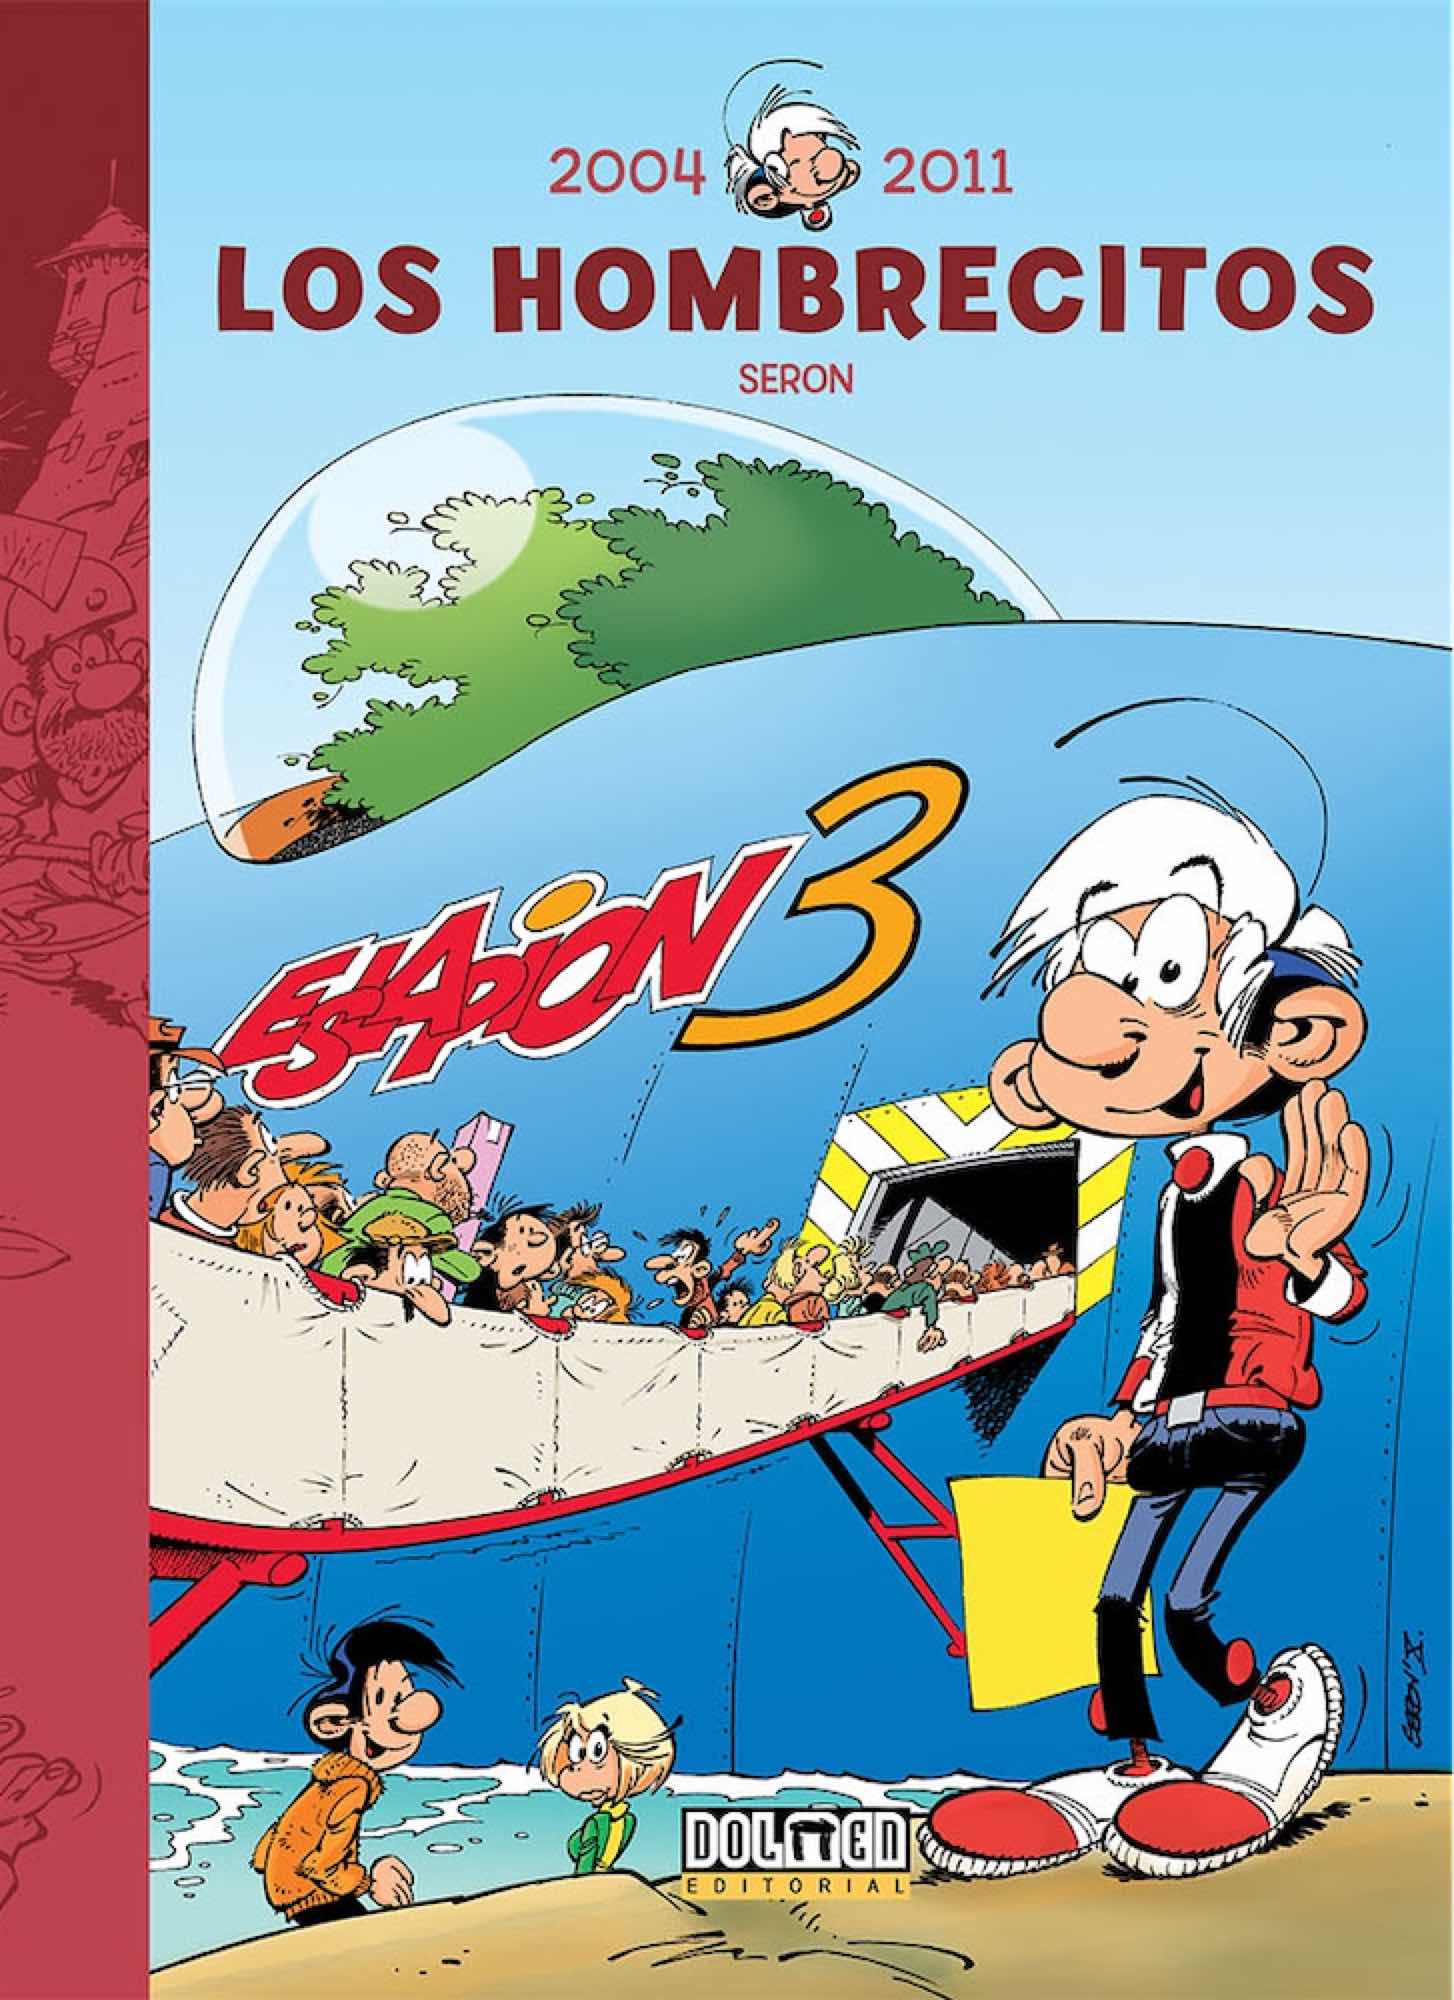 LOS HOMBRECITOS 15: 2004-2011